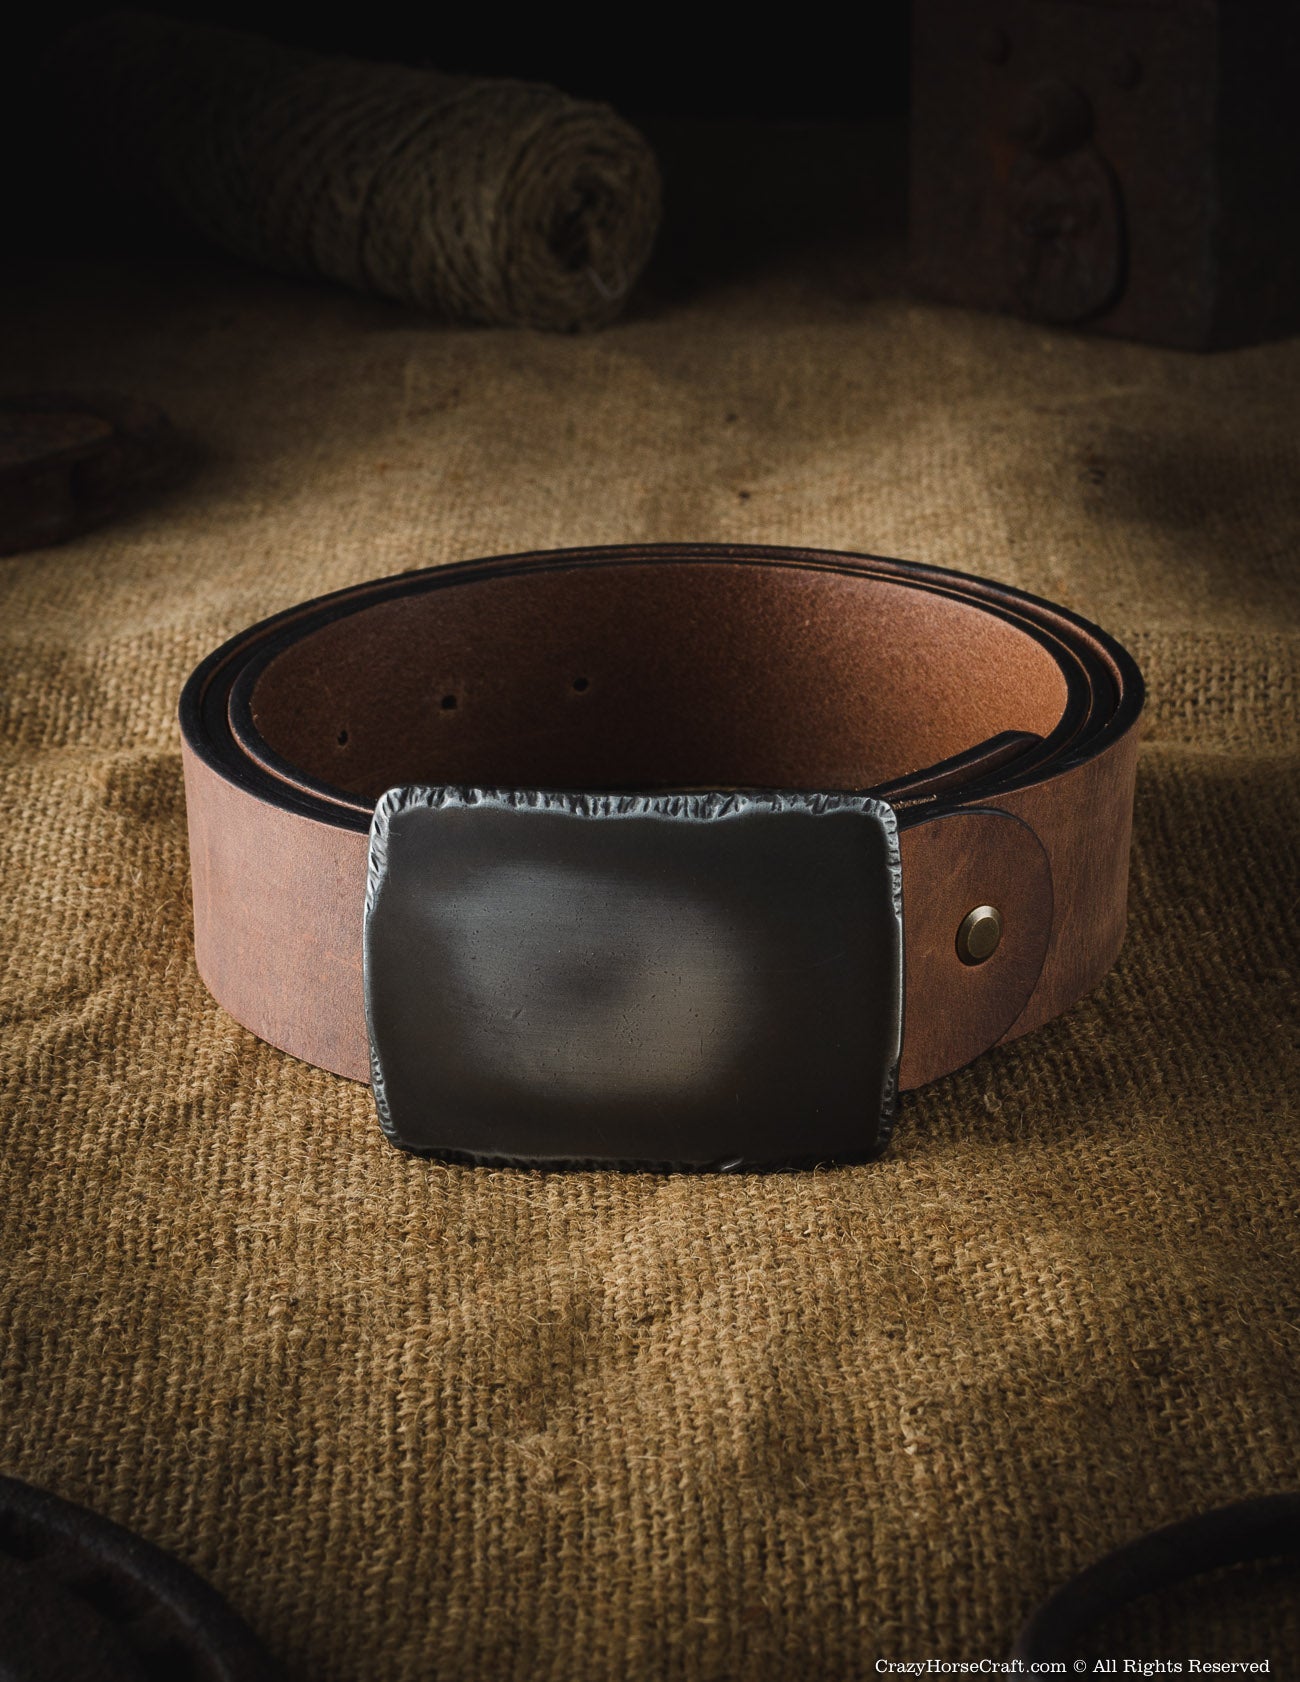 Leather Belt-Standard Natural vegetable-tanned leather belt, 1 1/2